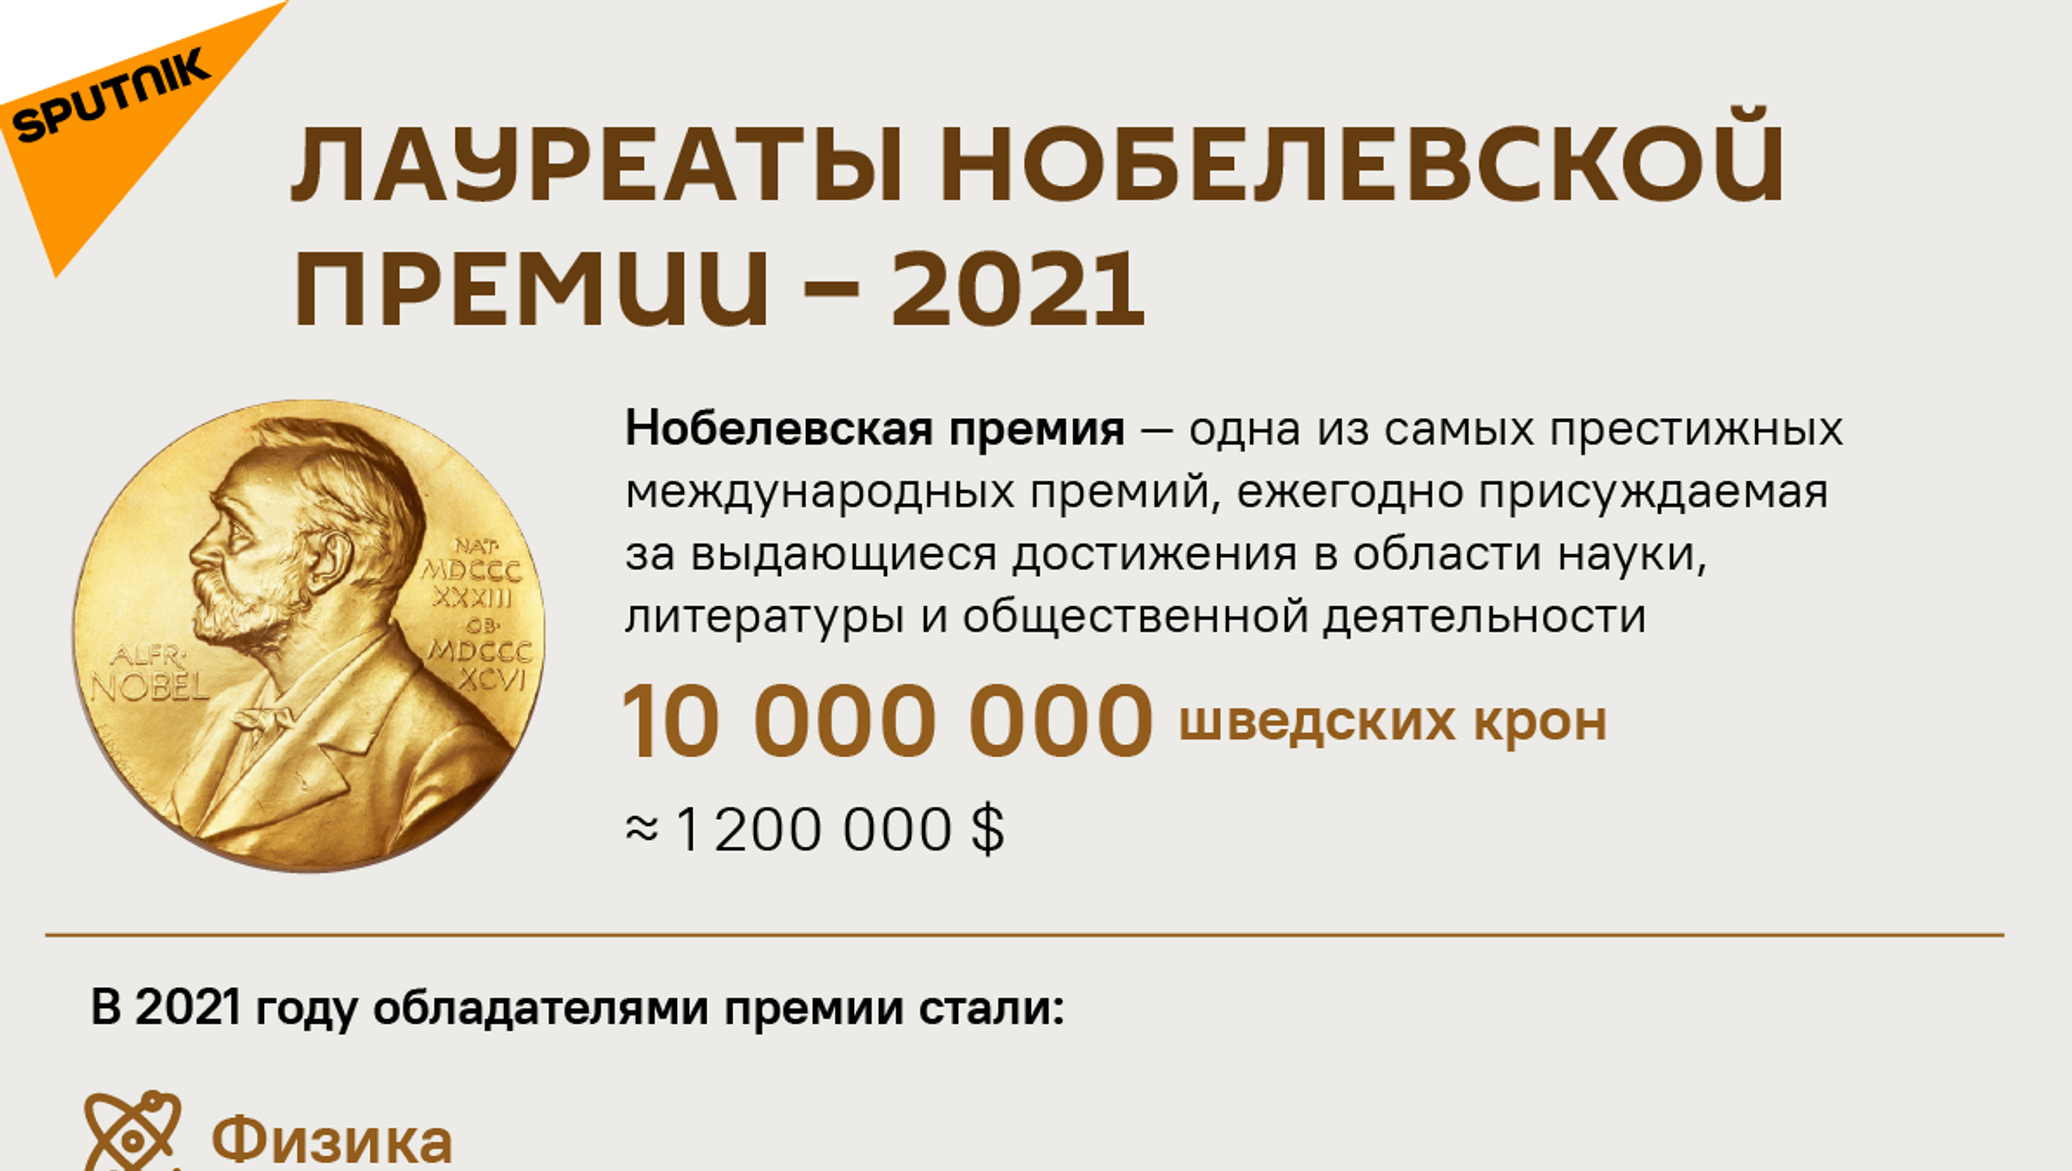 Нобелевская премия сумма. Нобелевская премия деньги. Размер Нобелевской премии. Нобелевские лауреаты по физике 2021.